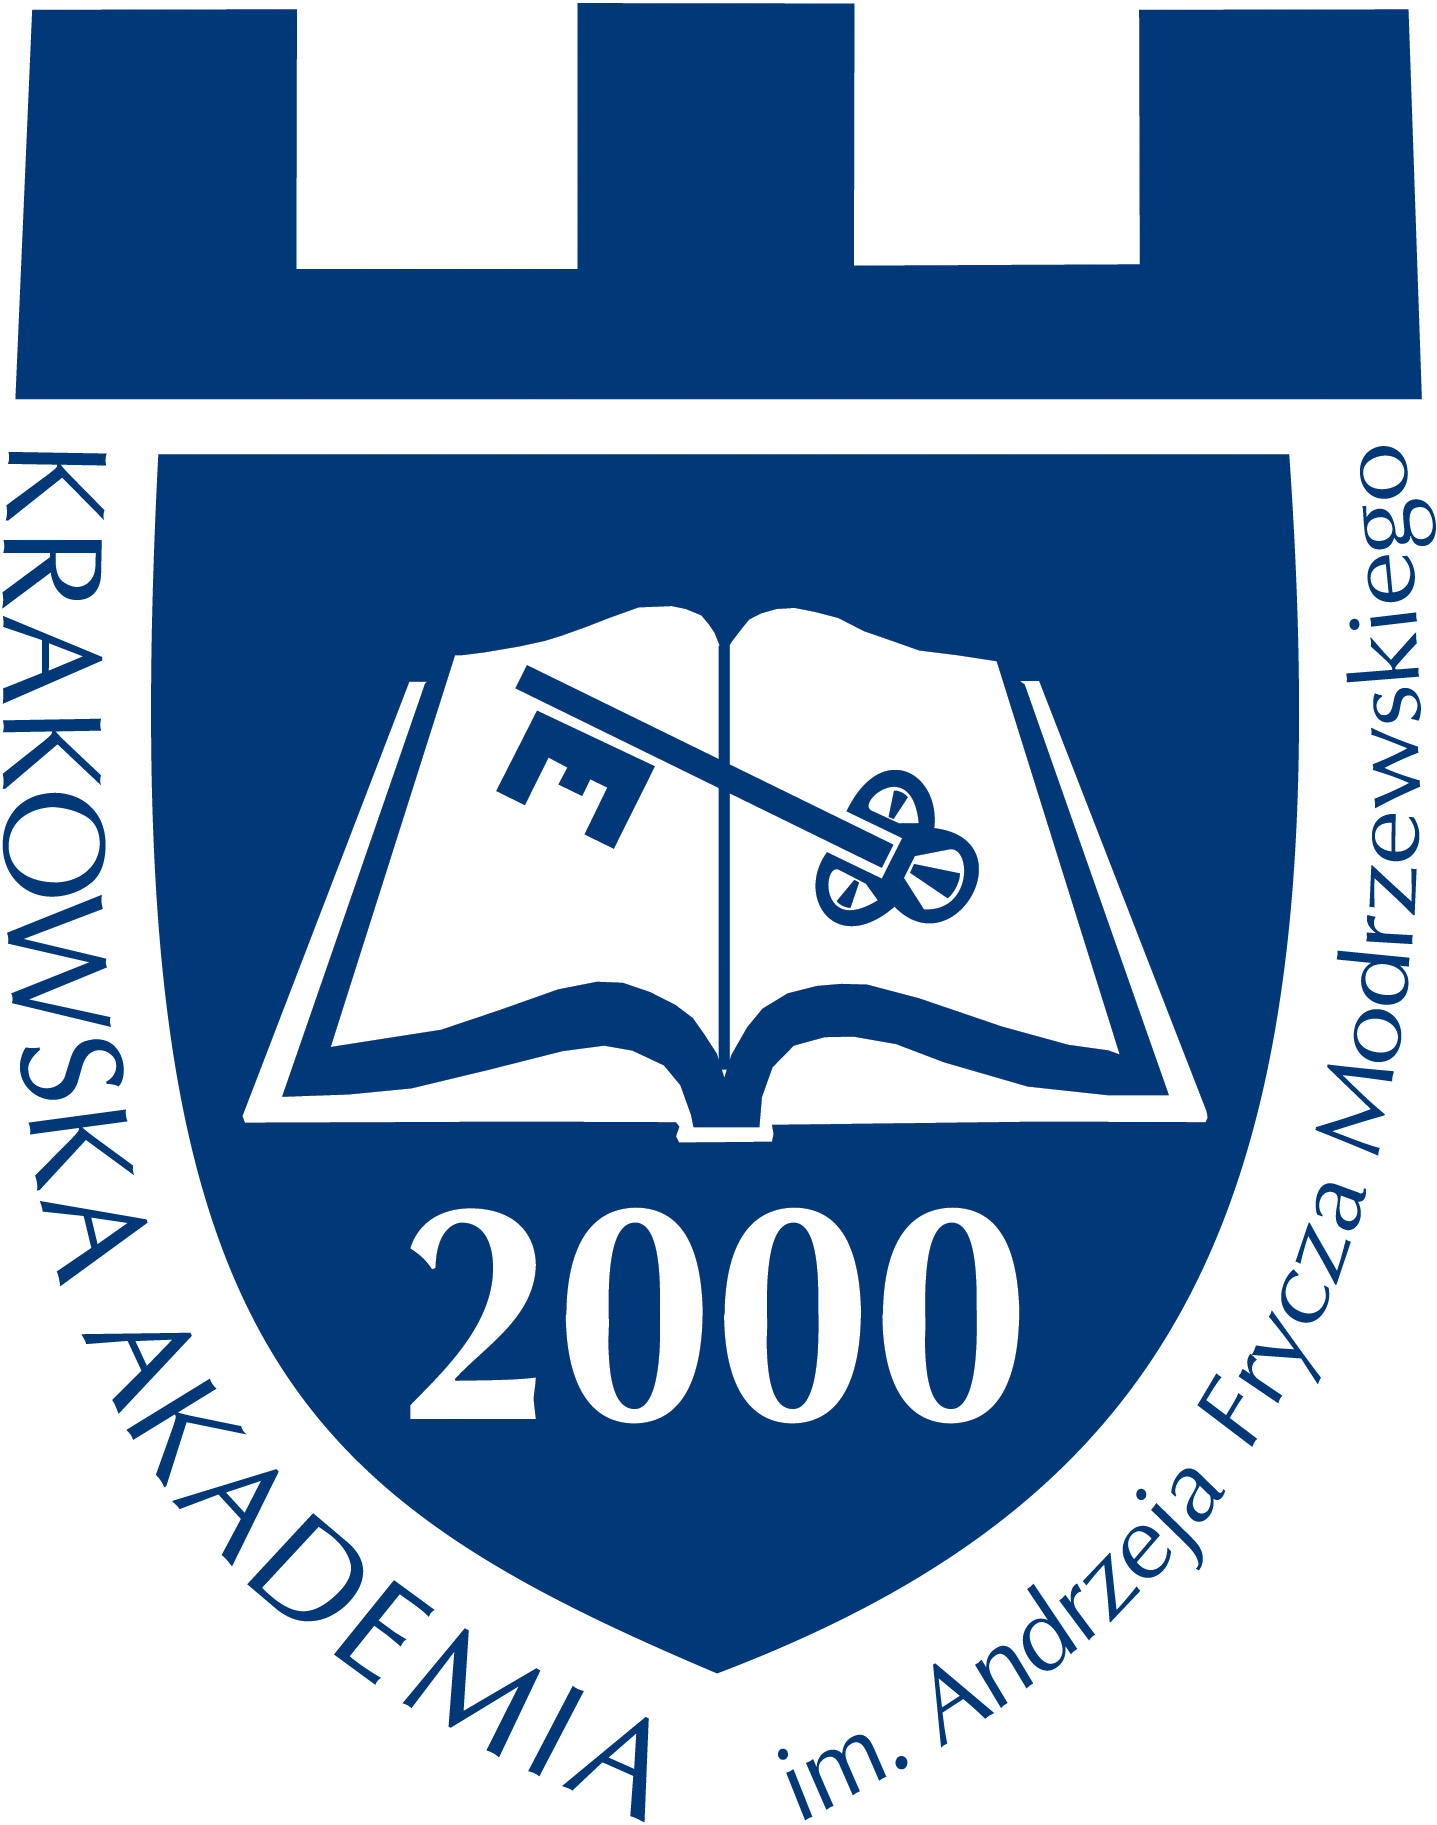 Krakowska Akademia im. Andrzeja Frycza Modrzewskiego logotyp